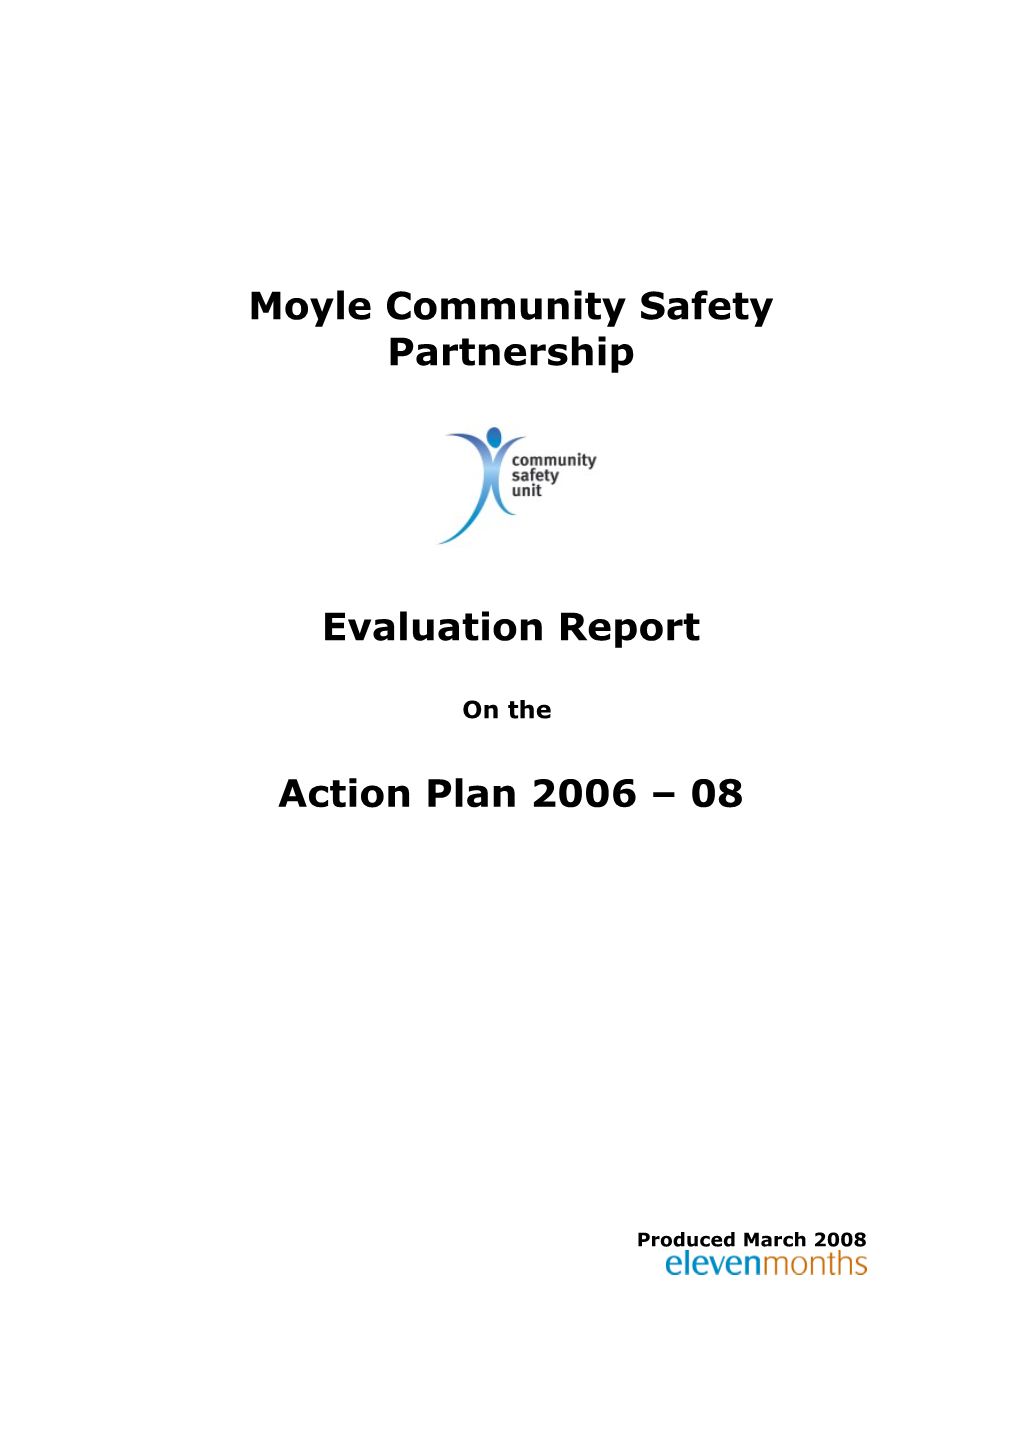 Moyle Community Safety Partnership